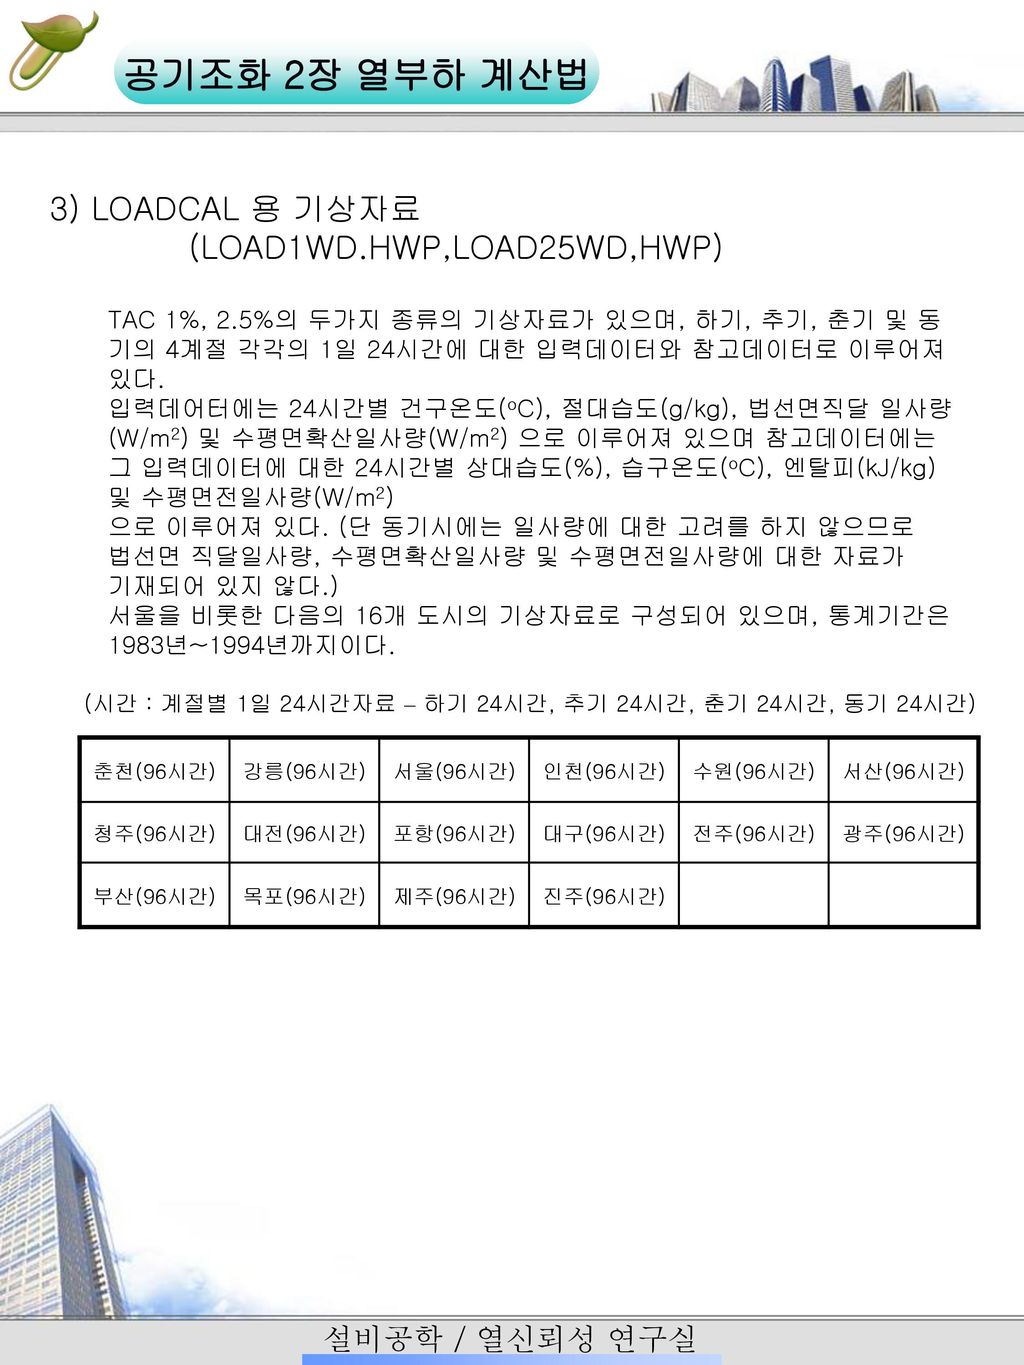 3) LOADCAL 용 기상자료 (LOAD1WD.HWP,LOAD25WD,HWP)